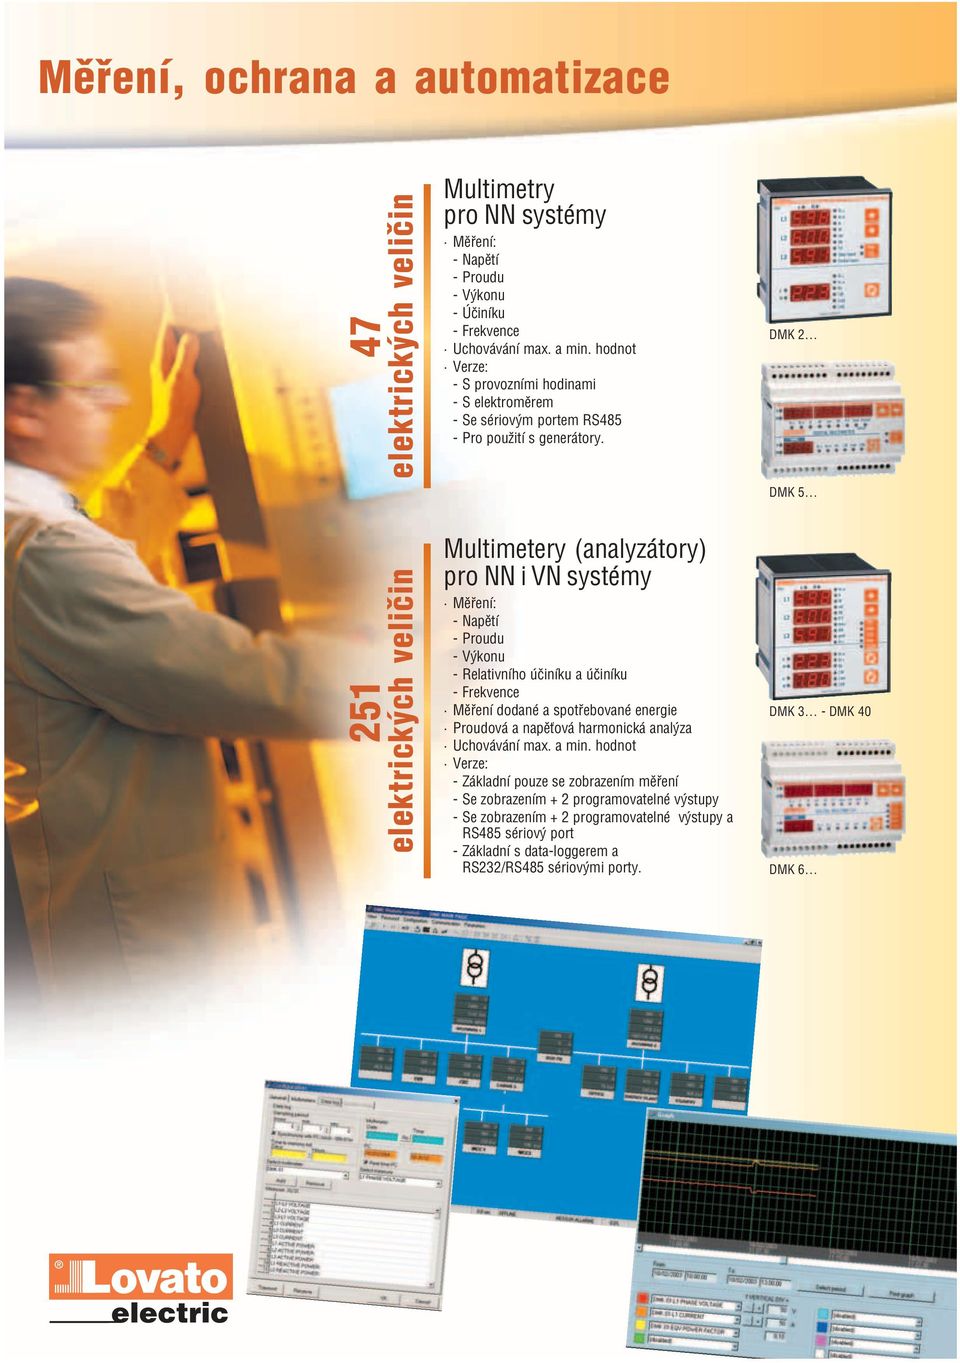 DMK 2 DMK 5 251 elektrických veličin Multimetery (analyzátory) pro NN i VN systémy Měření: Napětí Proudu Výkonu Relativního účiníku a účiníku Frekvence Měření dodané a spotřebované